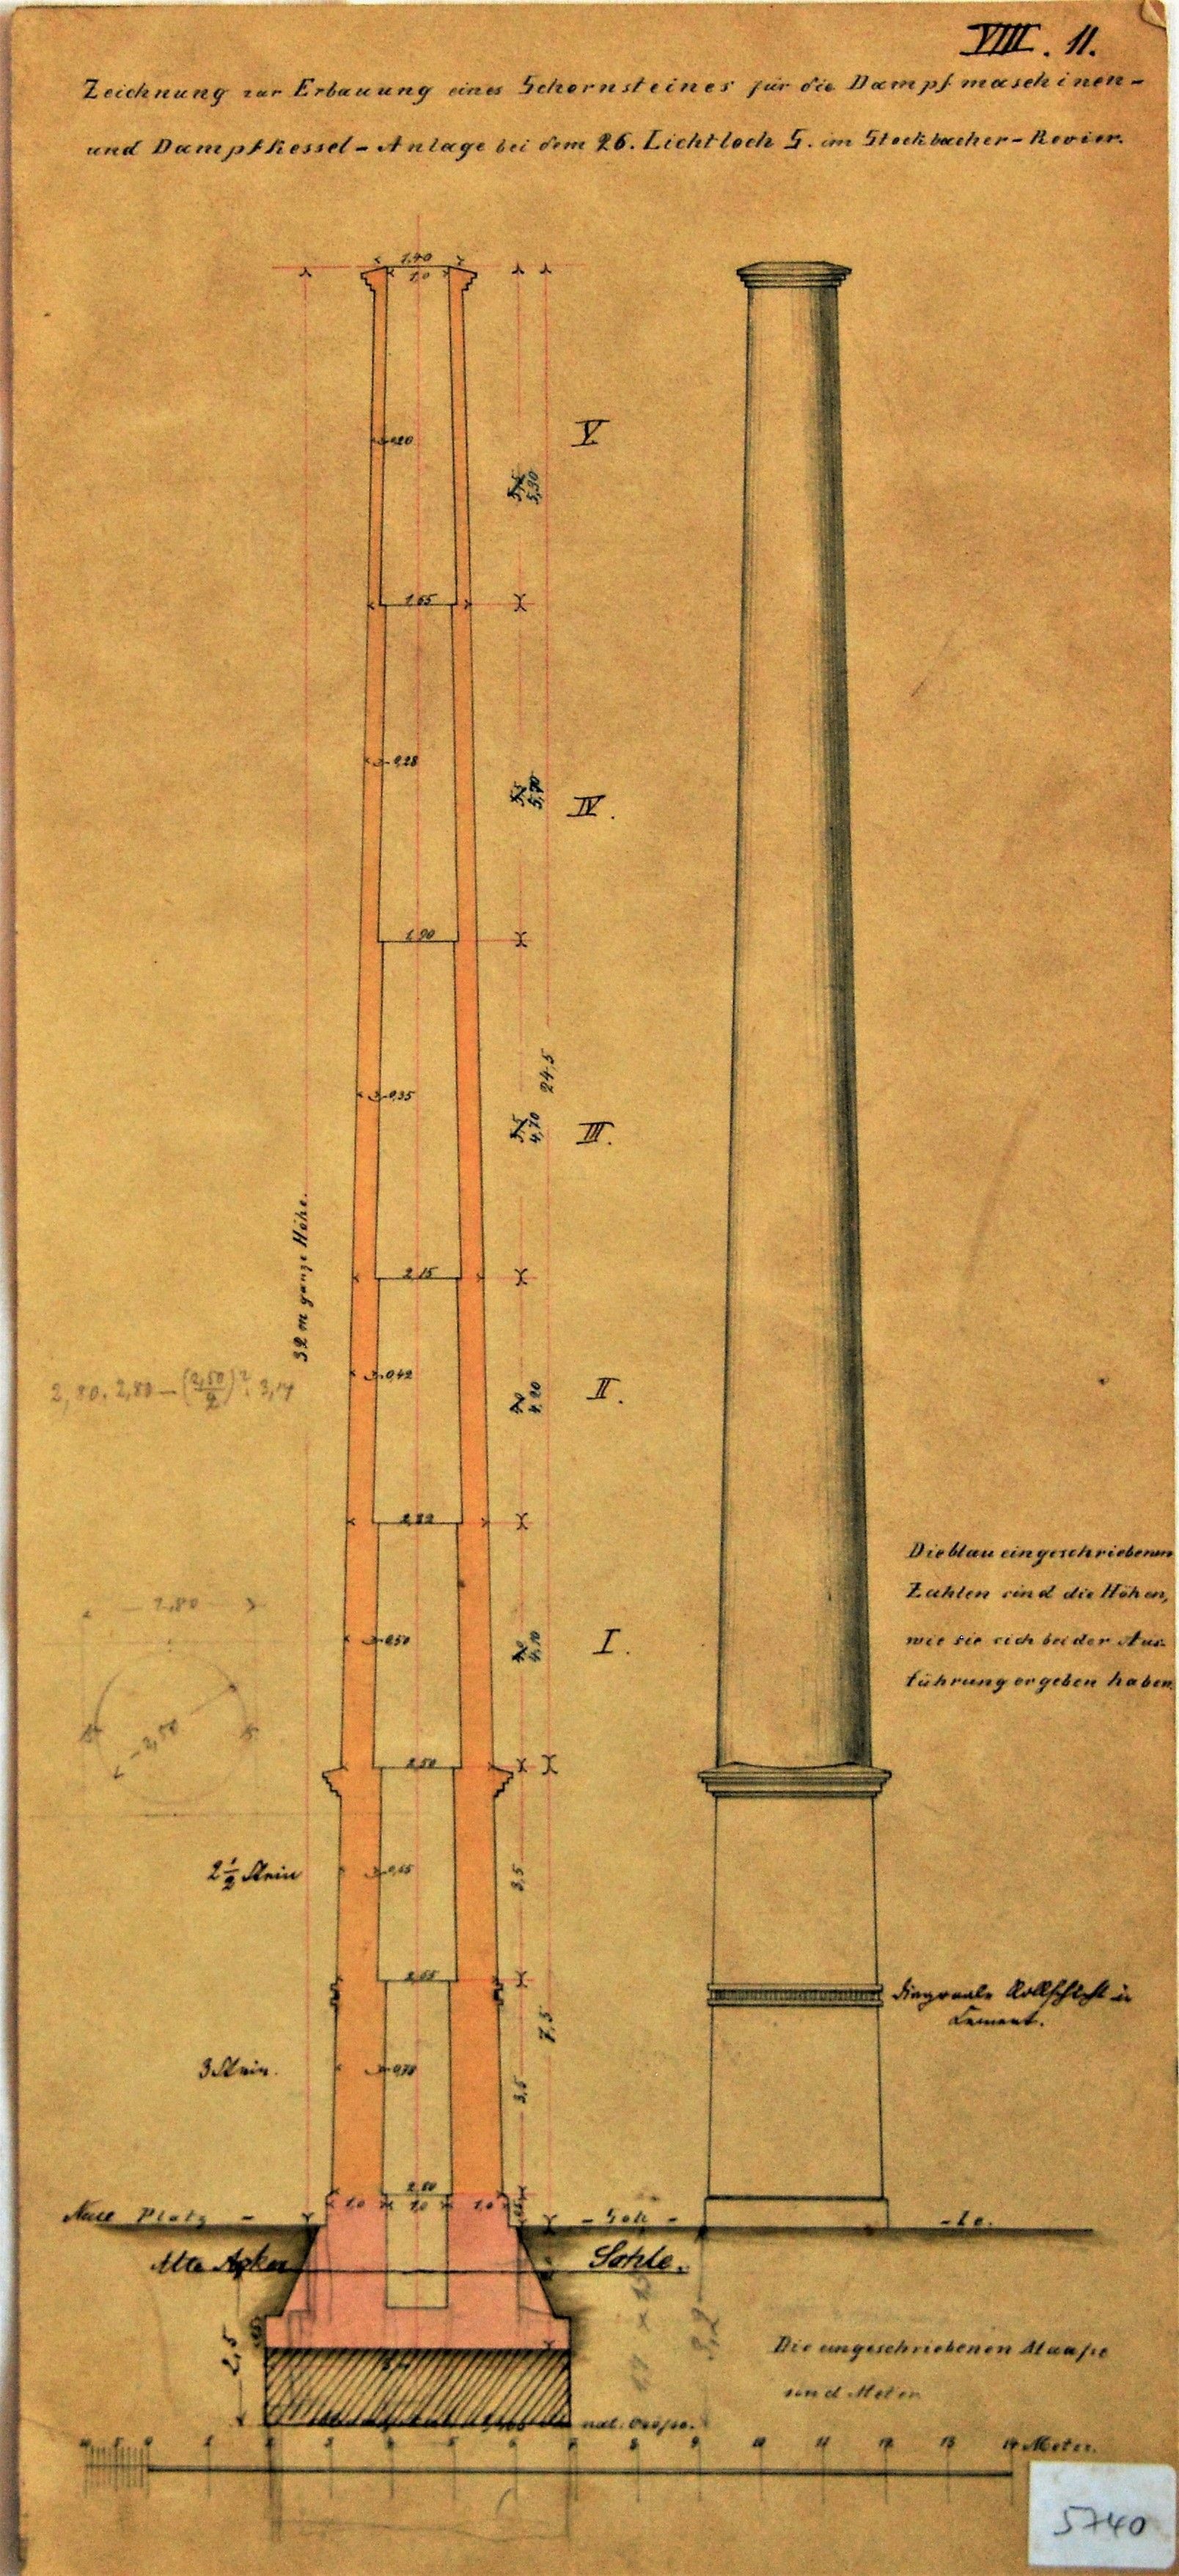 Zeichnung zur Erbauung eines Schornsteines für die Dampfmaschinen- und Dampfkesssel-Anlage bei dem 26. Lichtloch S im Stockbacher Revier. (Mansfeld-Museum im Humboldt-Schloss CC BY-NC-SA)